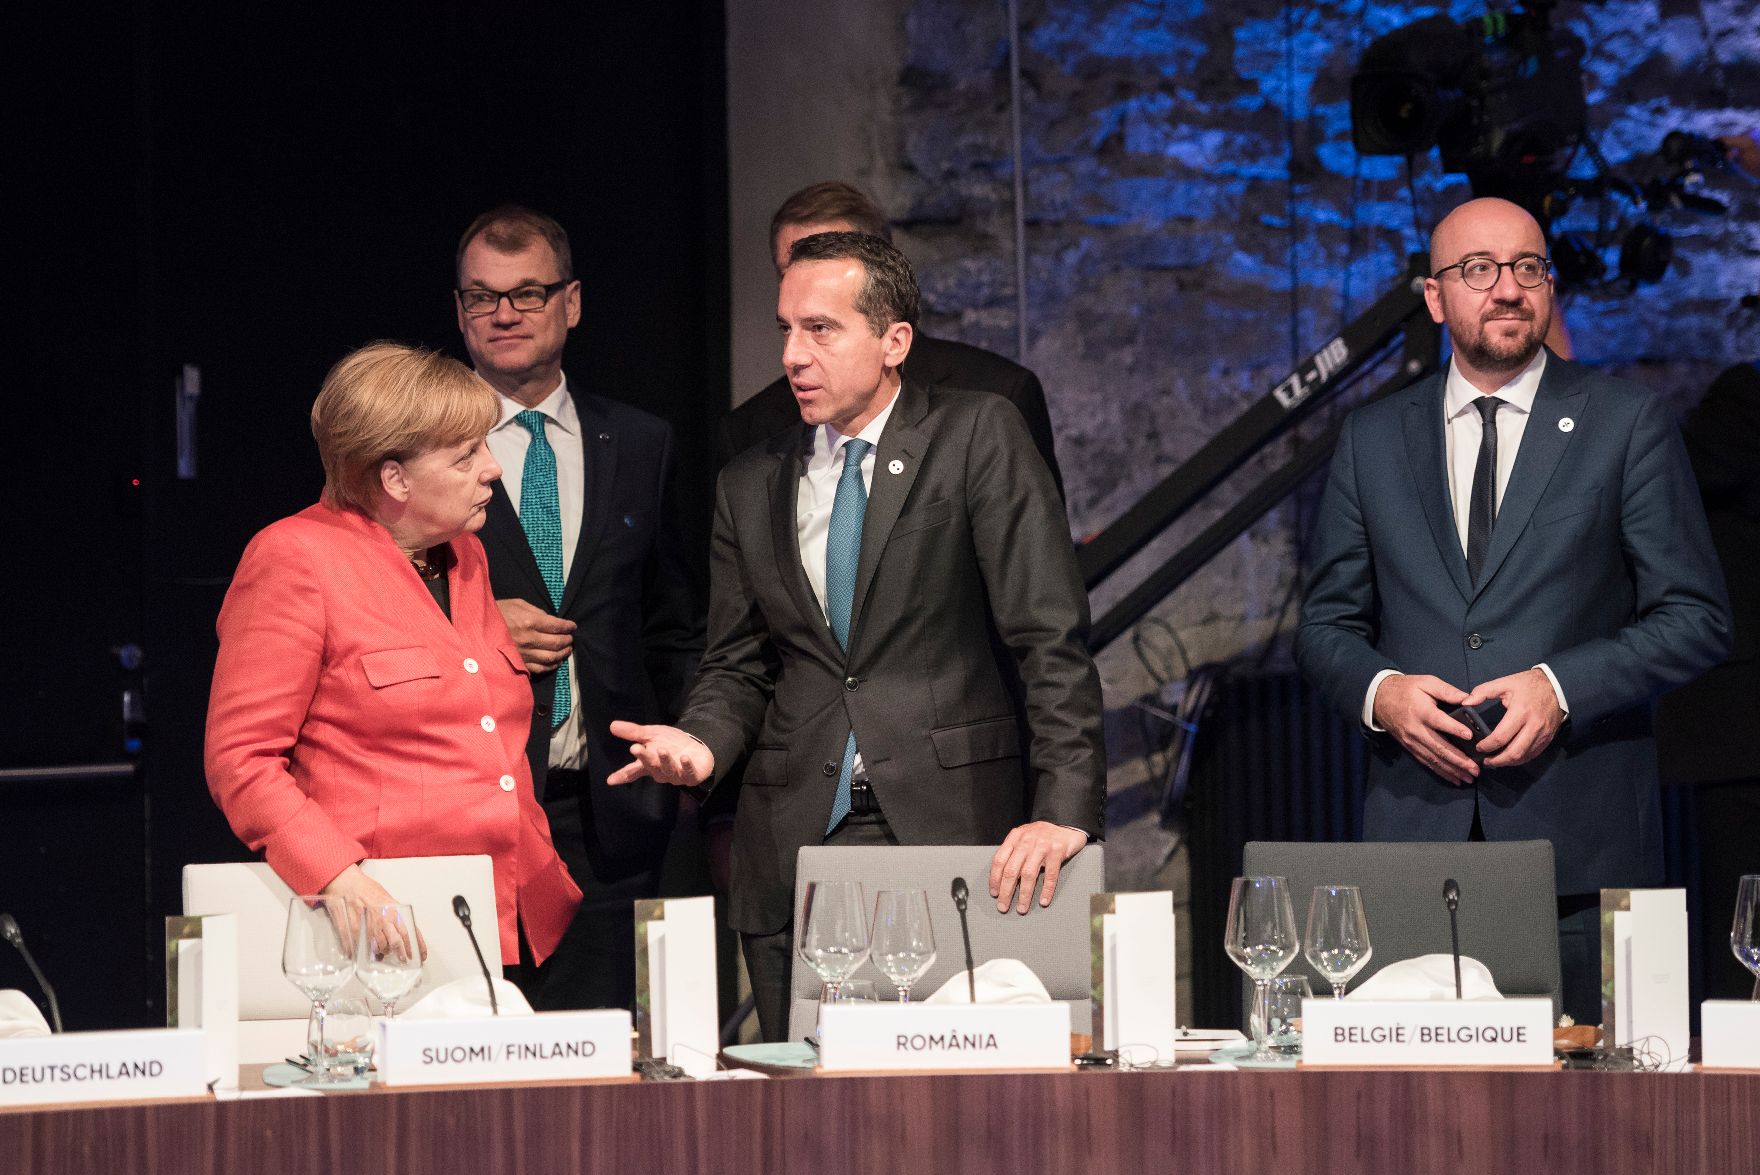 Am 29. September 2017 fand das Digitale Gipfeltreffen der Europäischen Staats- und Regierungschefs in Tallinn statt. Im Bild Bundeskanzler Christian Kern (m.r.) mit der deutschen Bundeskanzlerin Angela Merkel (l.).